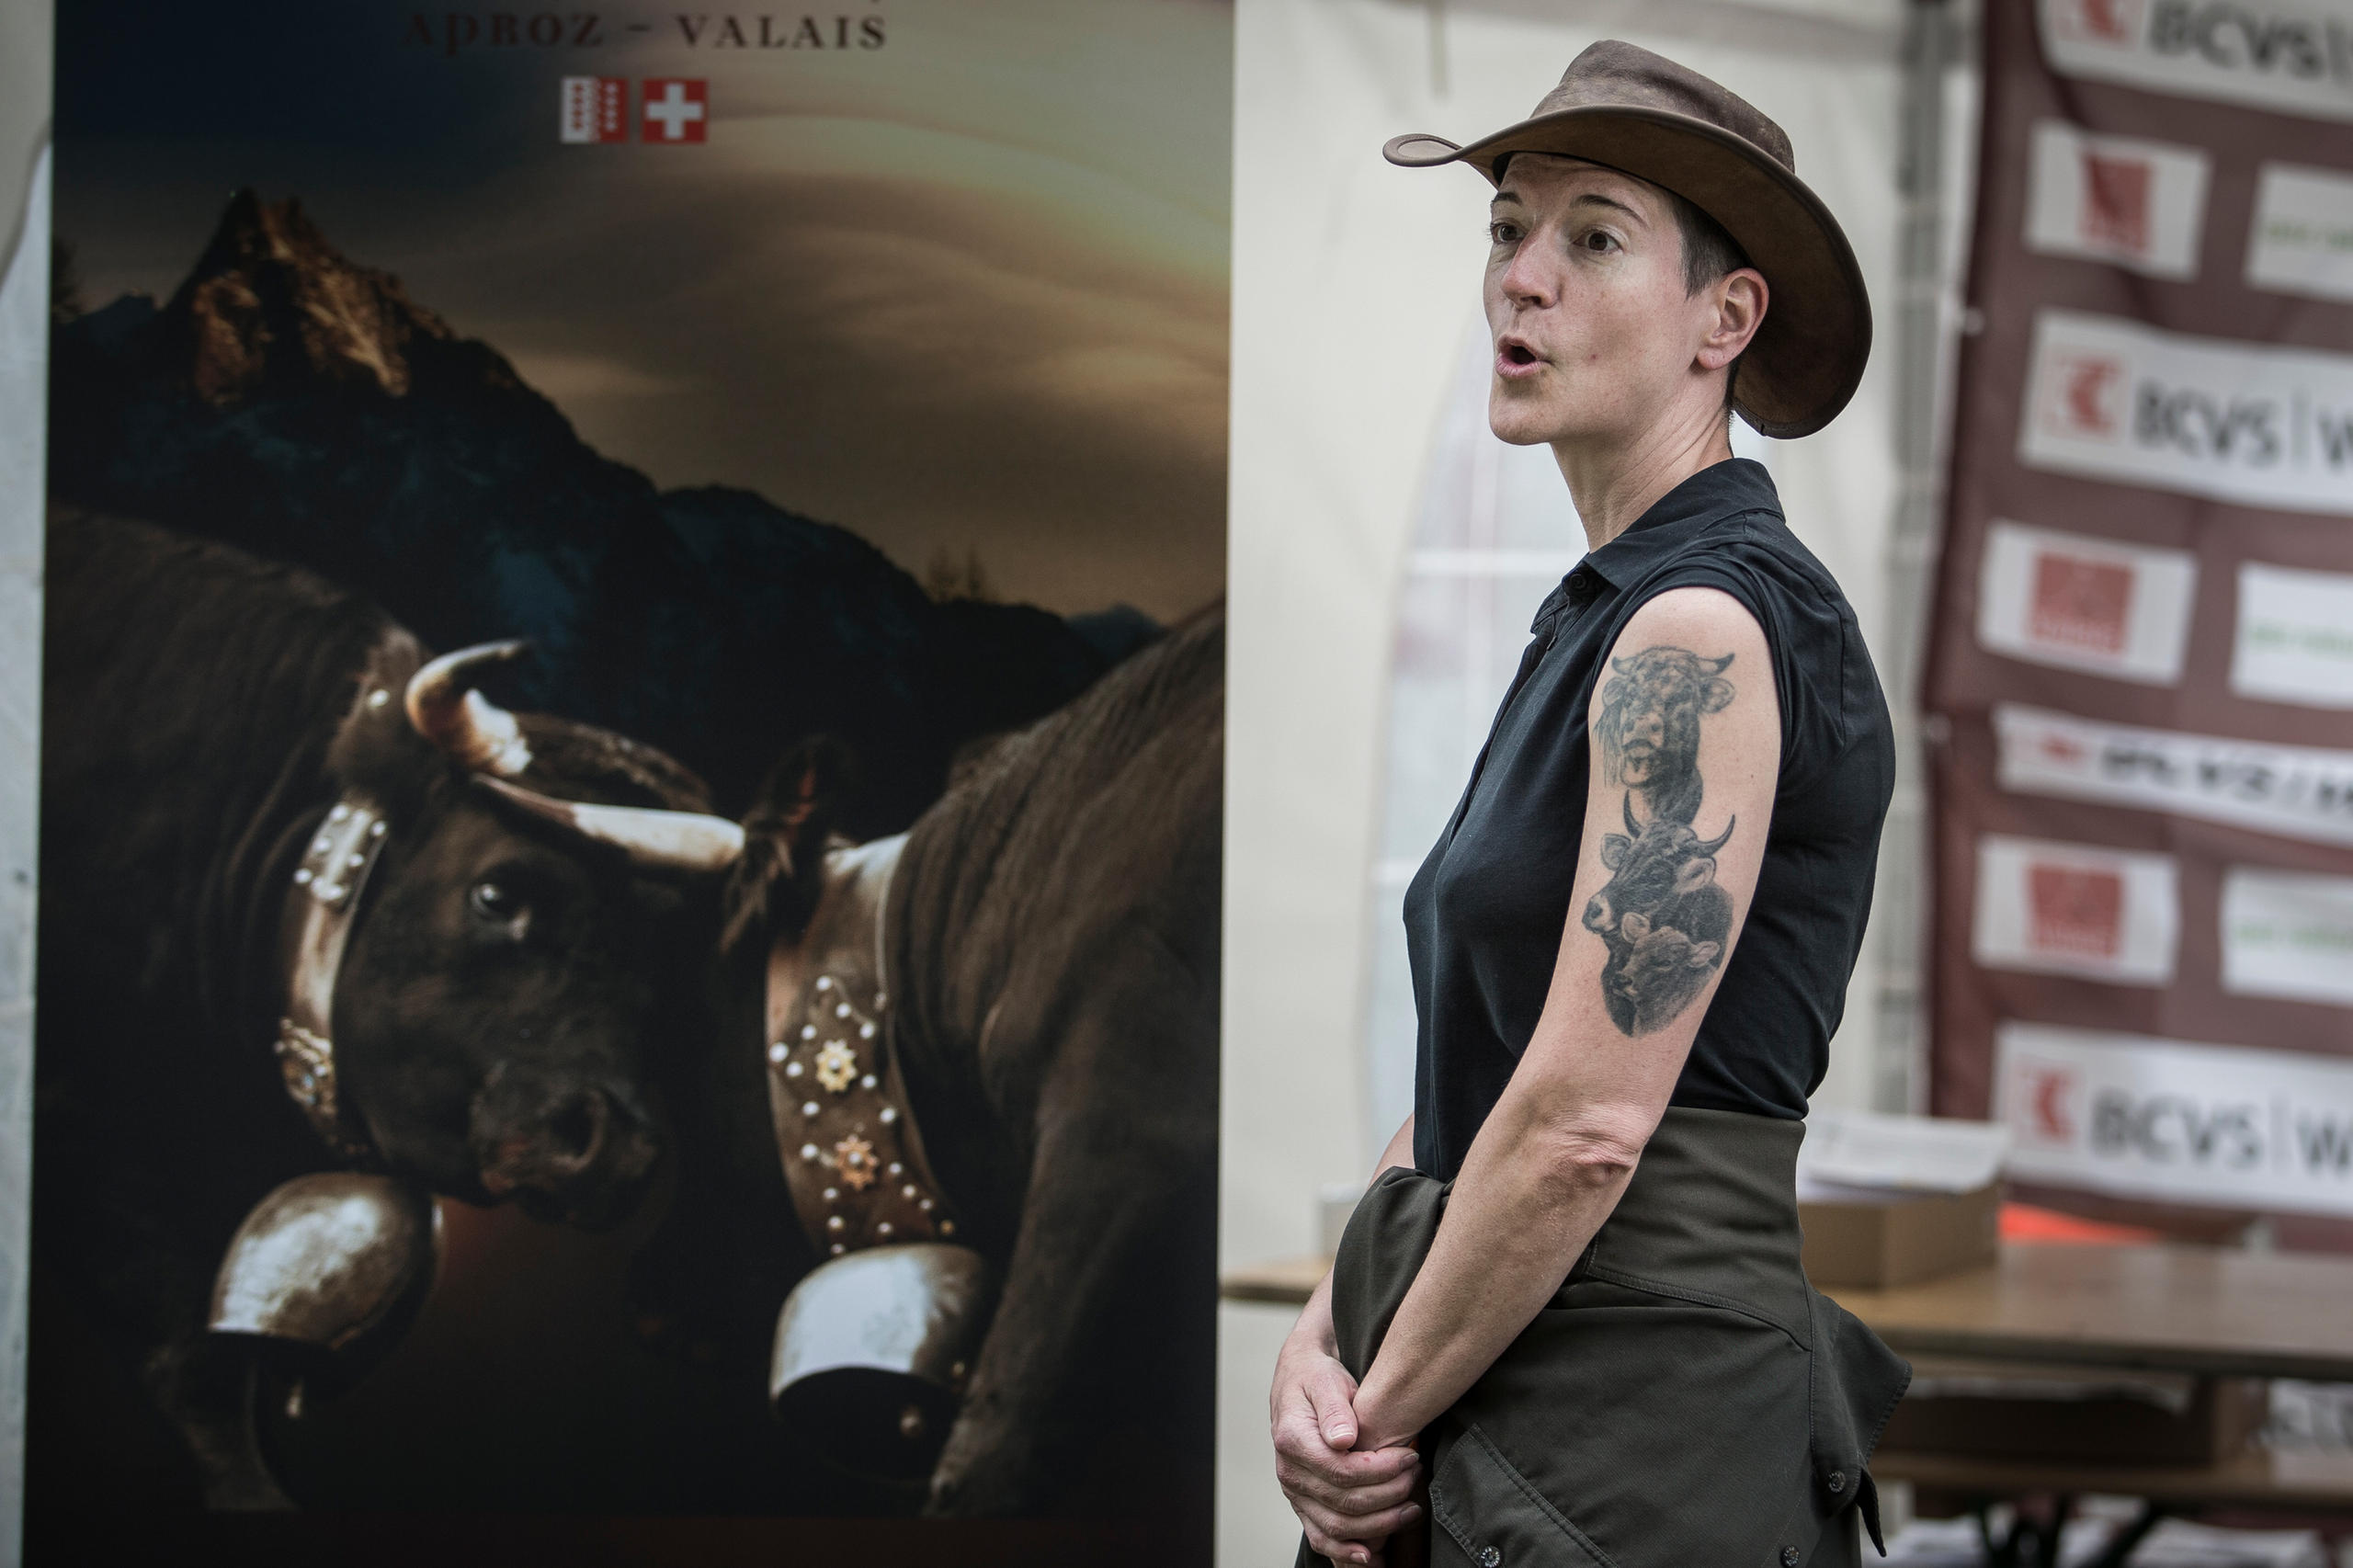 donna col cappello da cowboy e sullo sfondo un poster con delle mucche